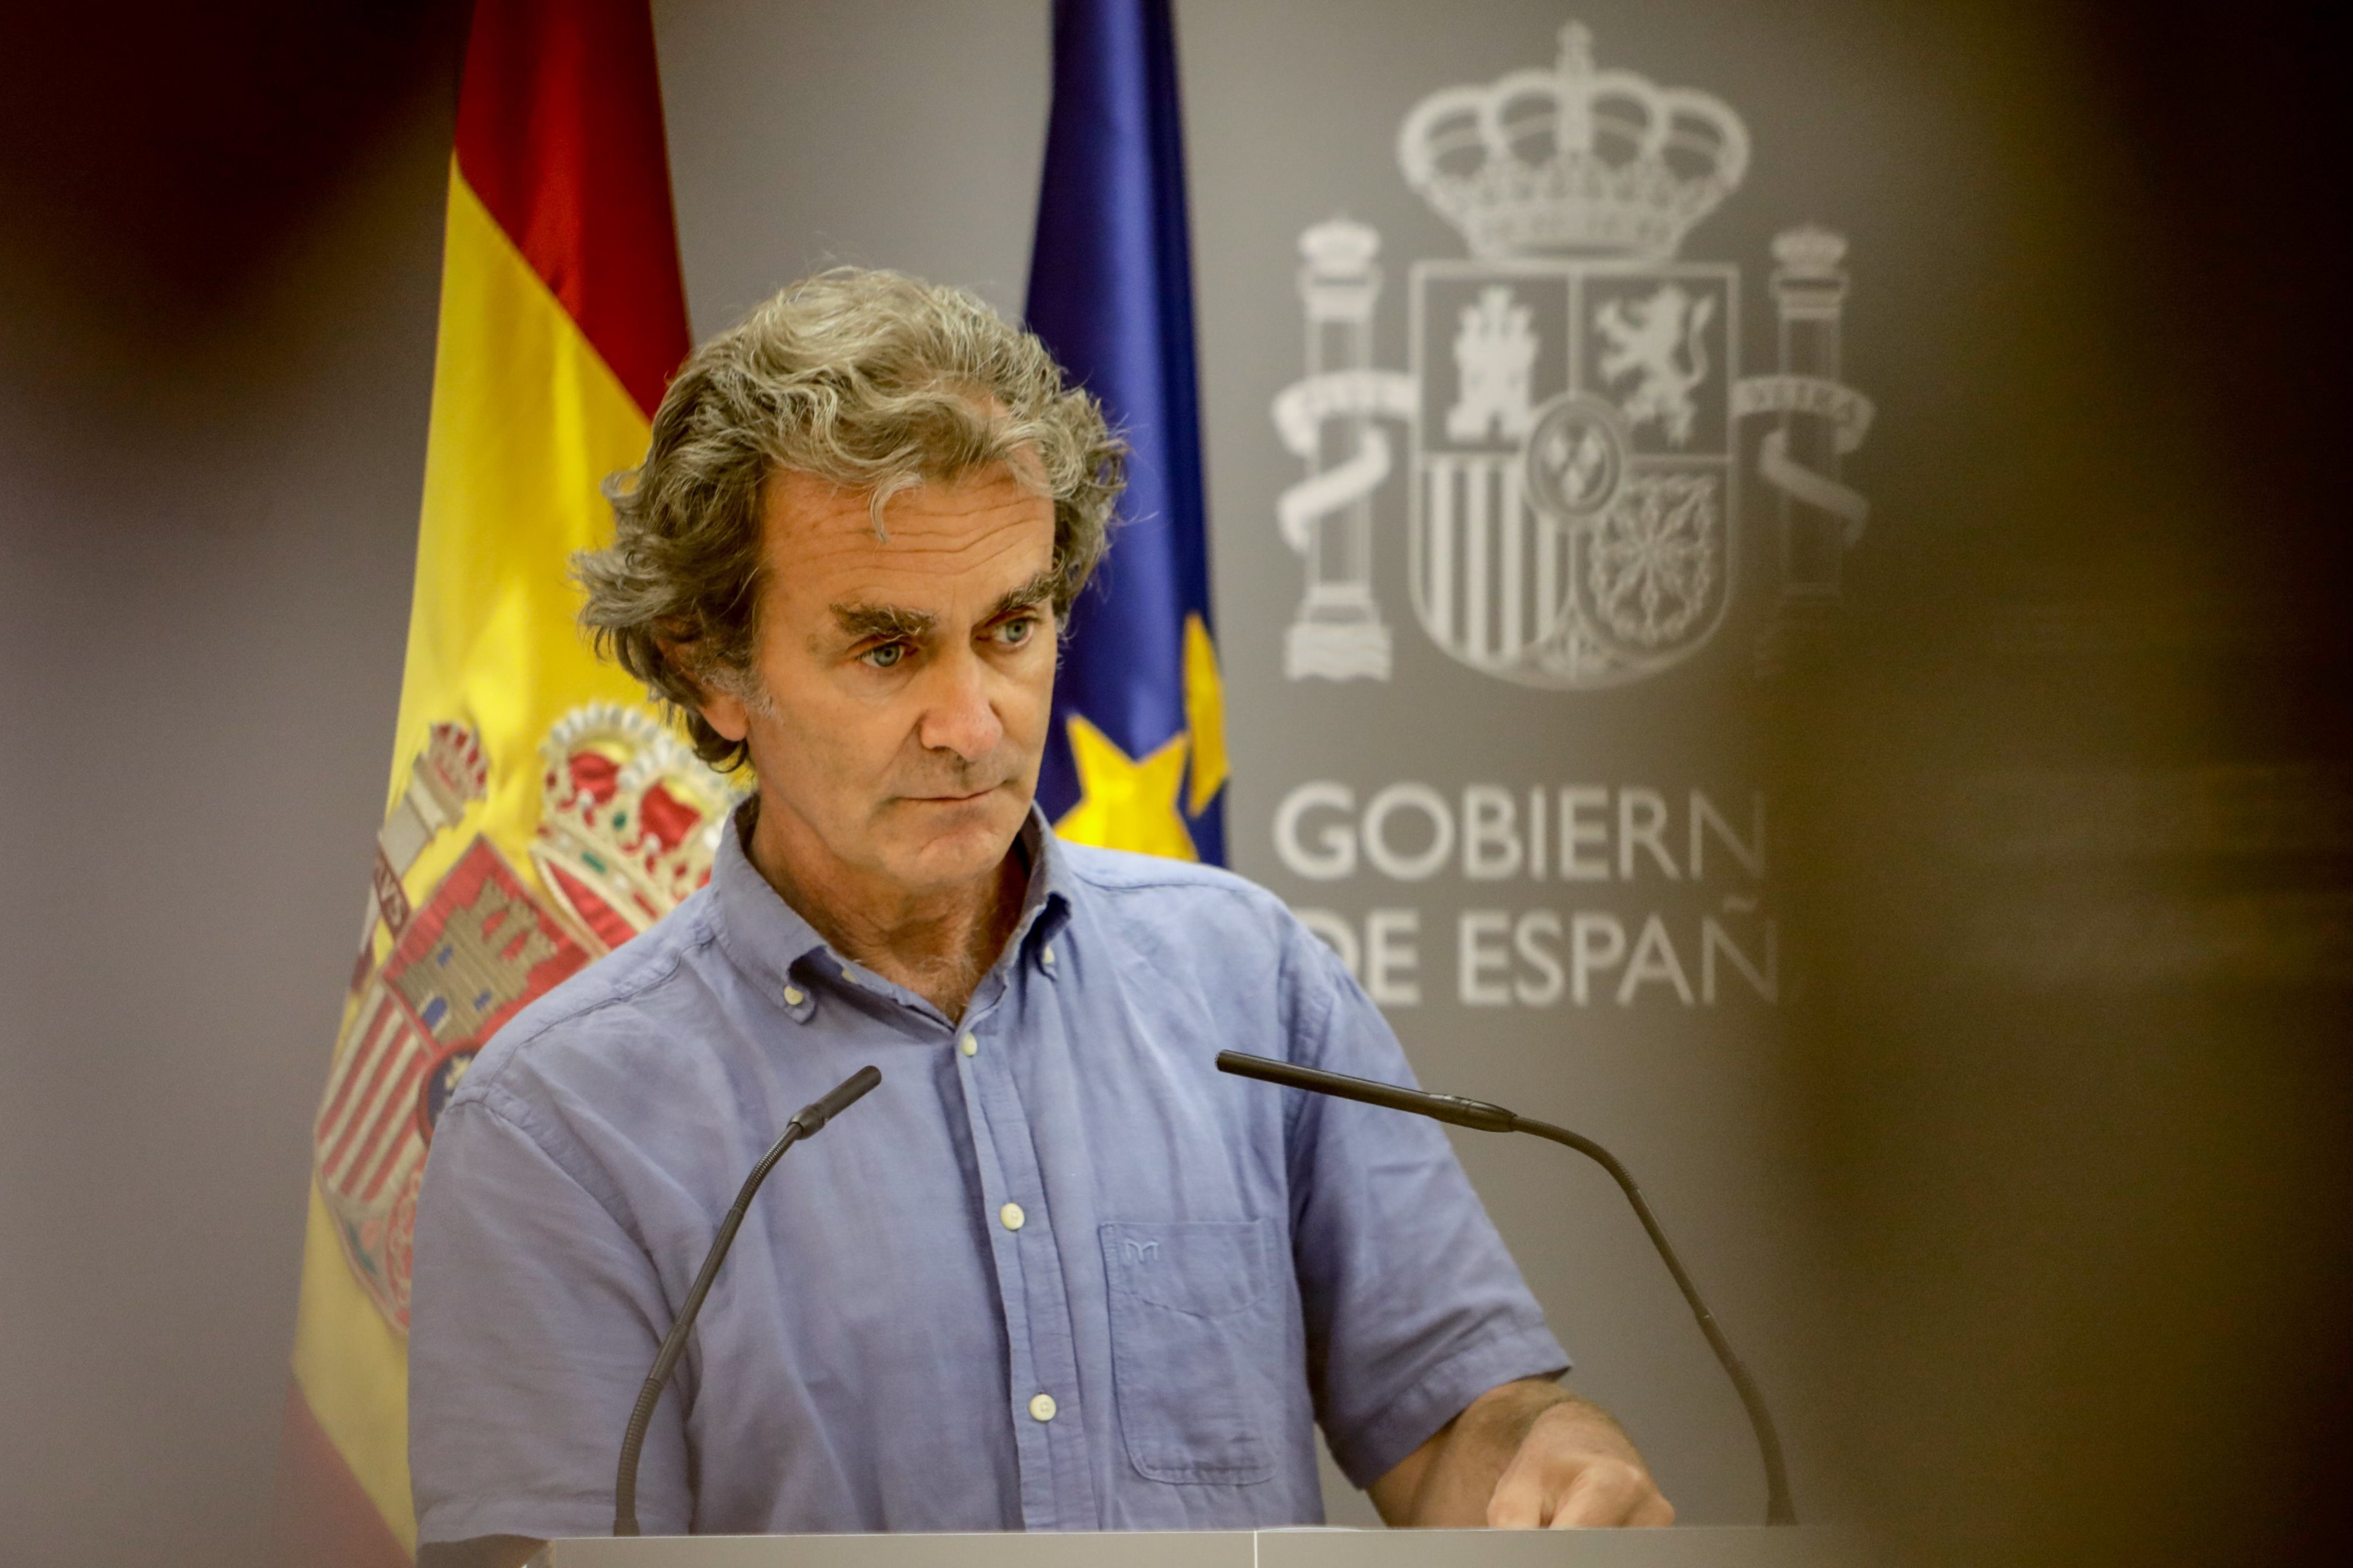 Sanitat notifica 16.269 nous contagis a Espanya els darrers tres dies